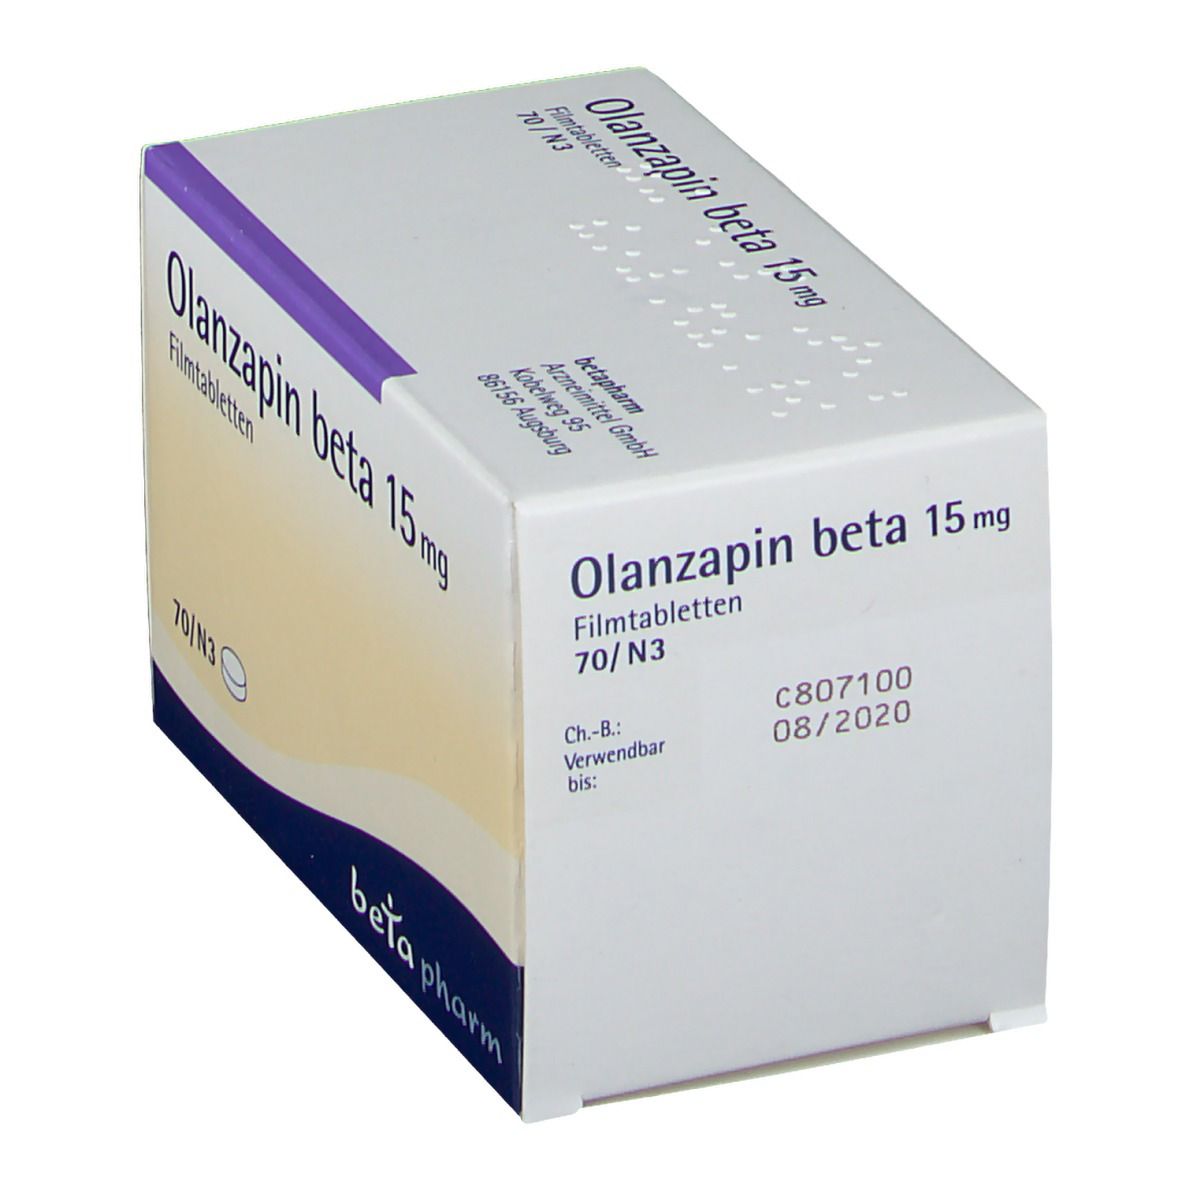 Olanzapin beta 15 mg